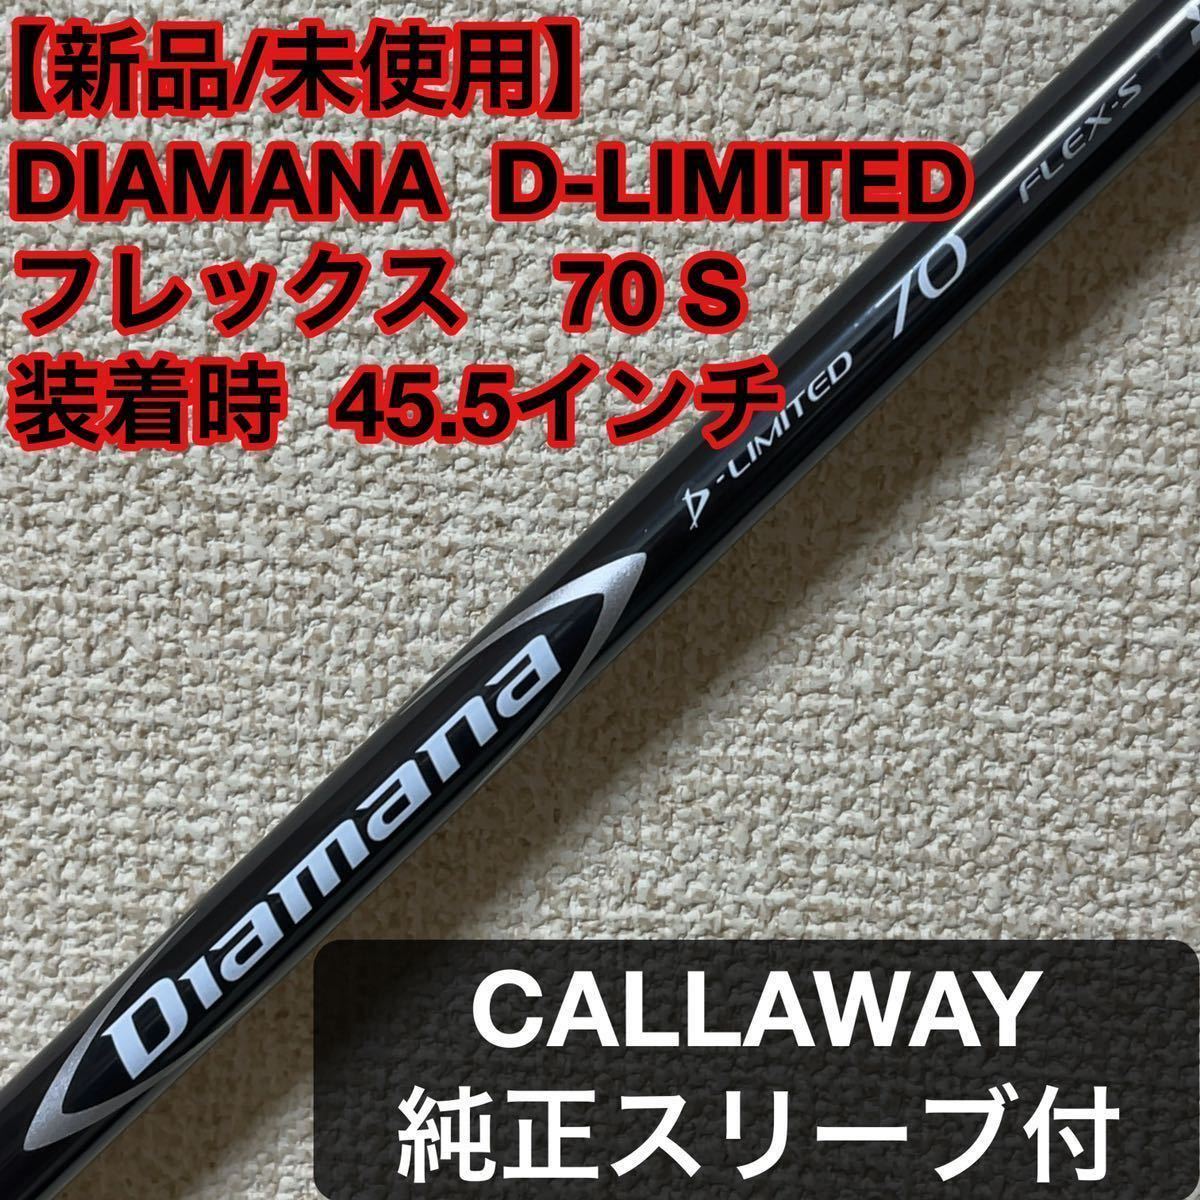 通販半額Diamana D-limited 70S ドライバーシャフト キャロウェイ クラブ